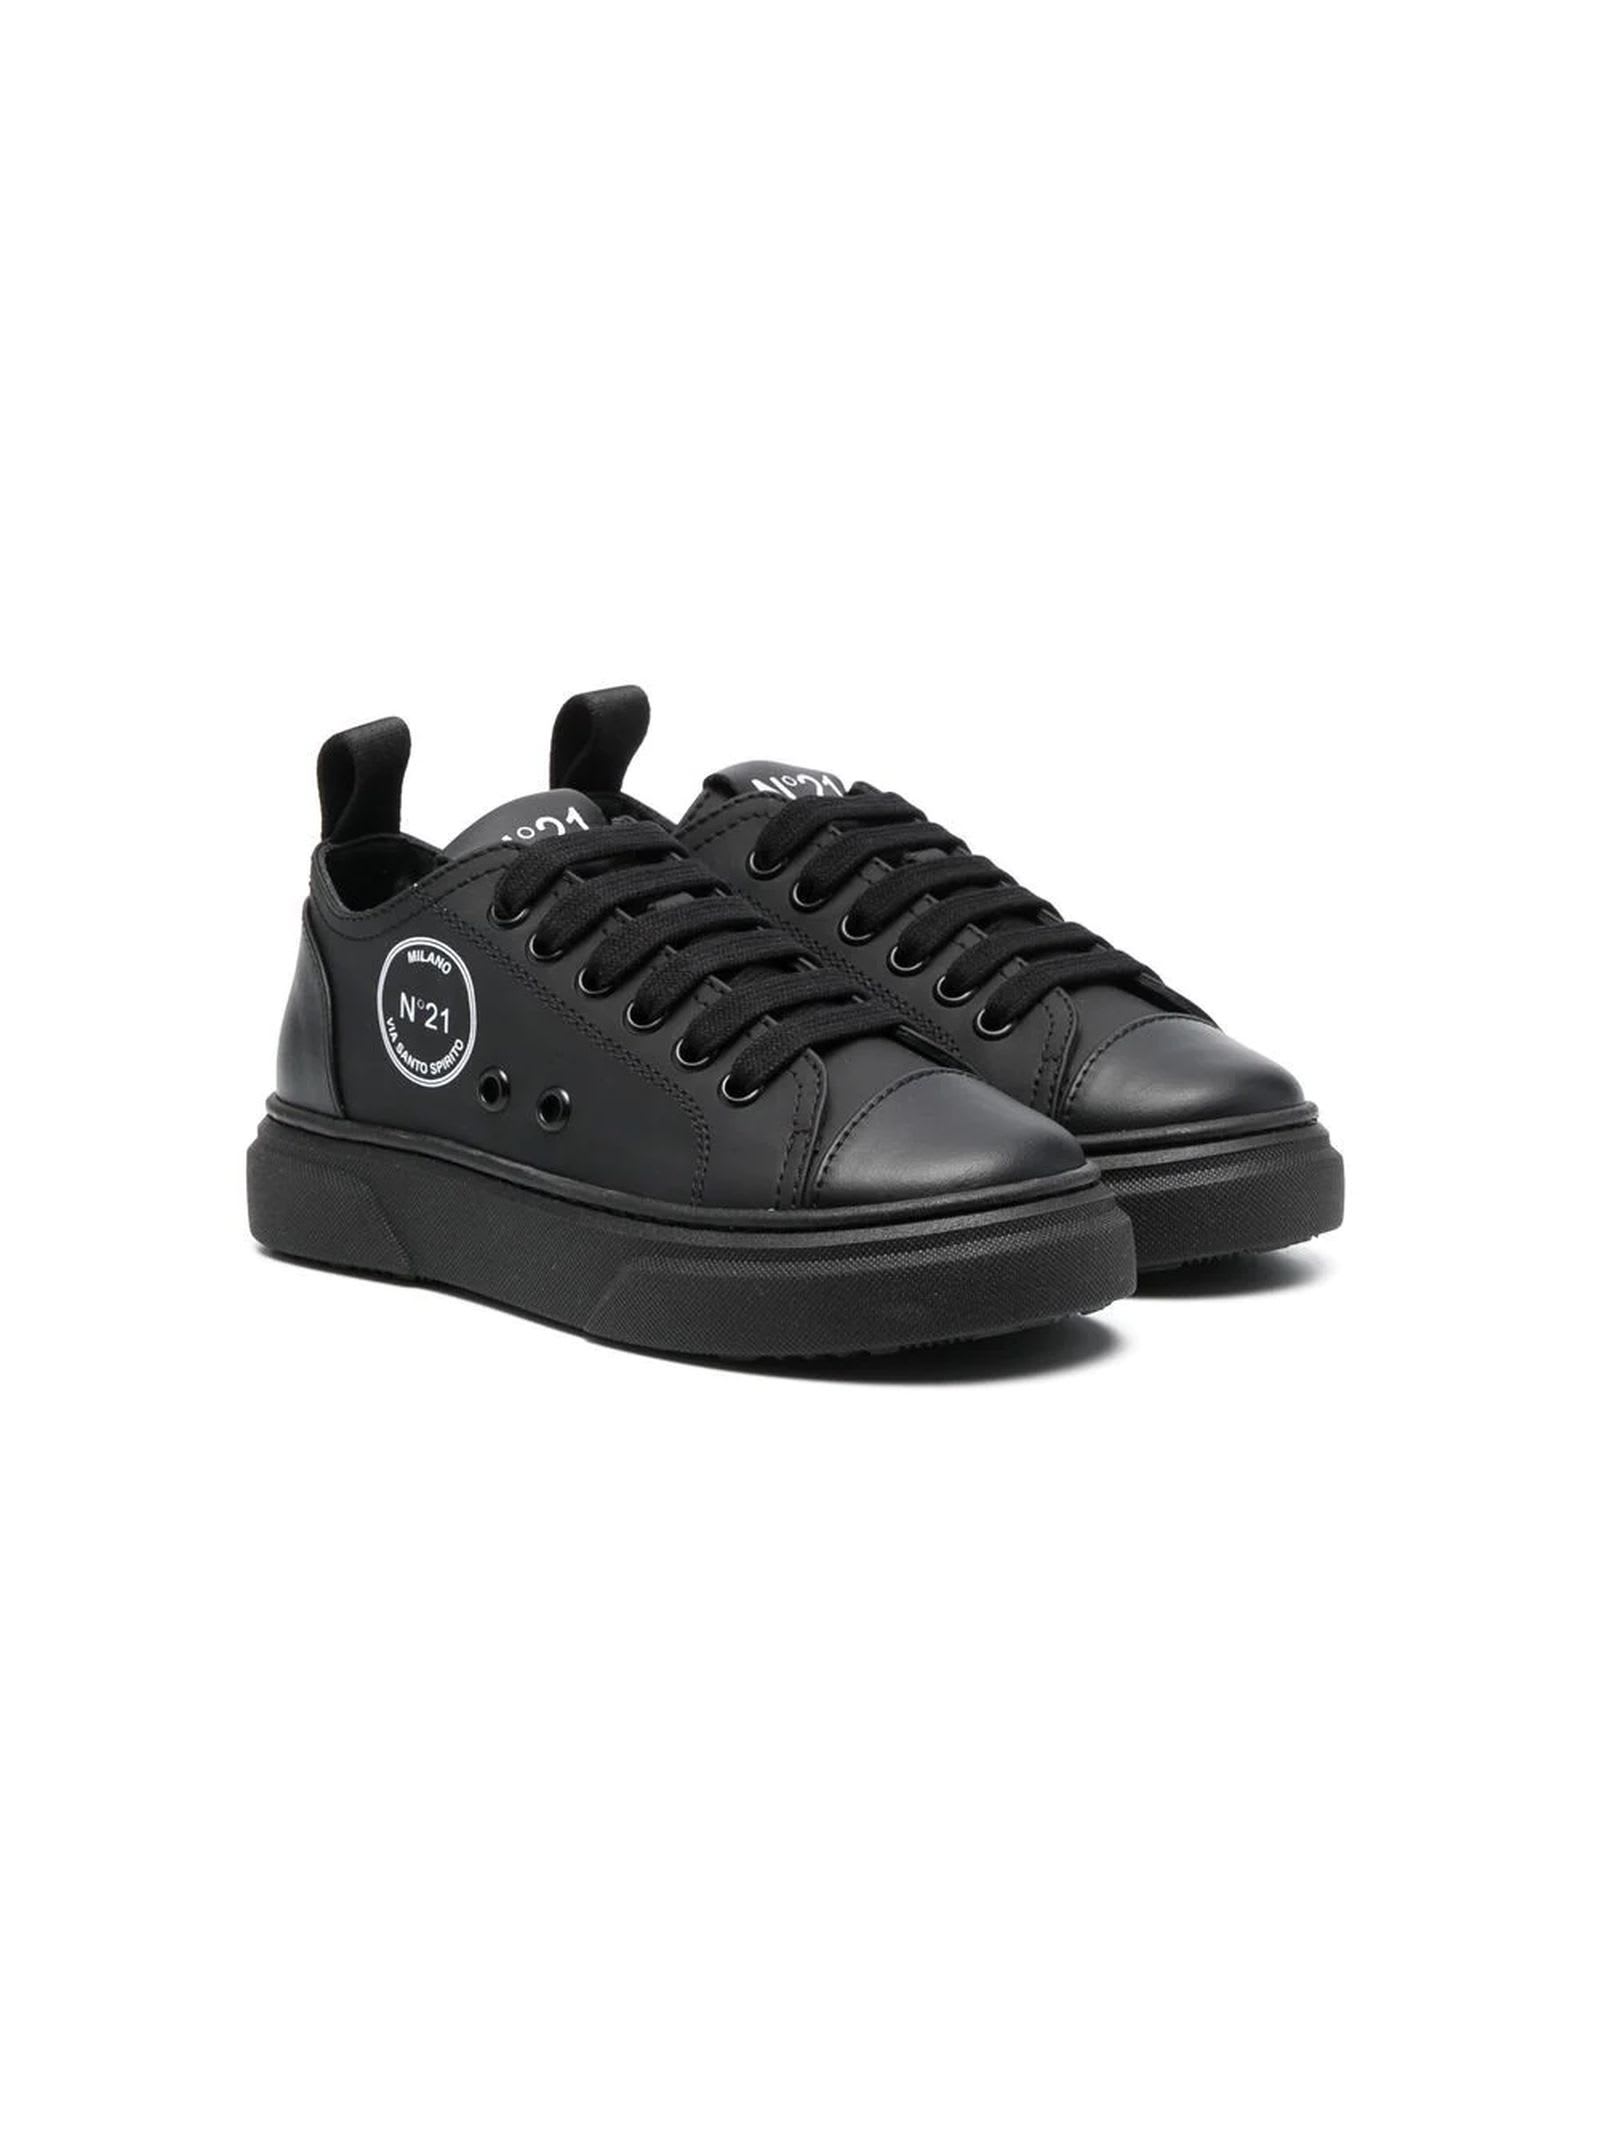 N.21 Black Leather Sneakers